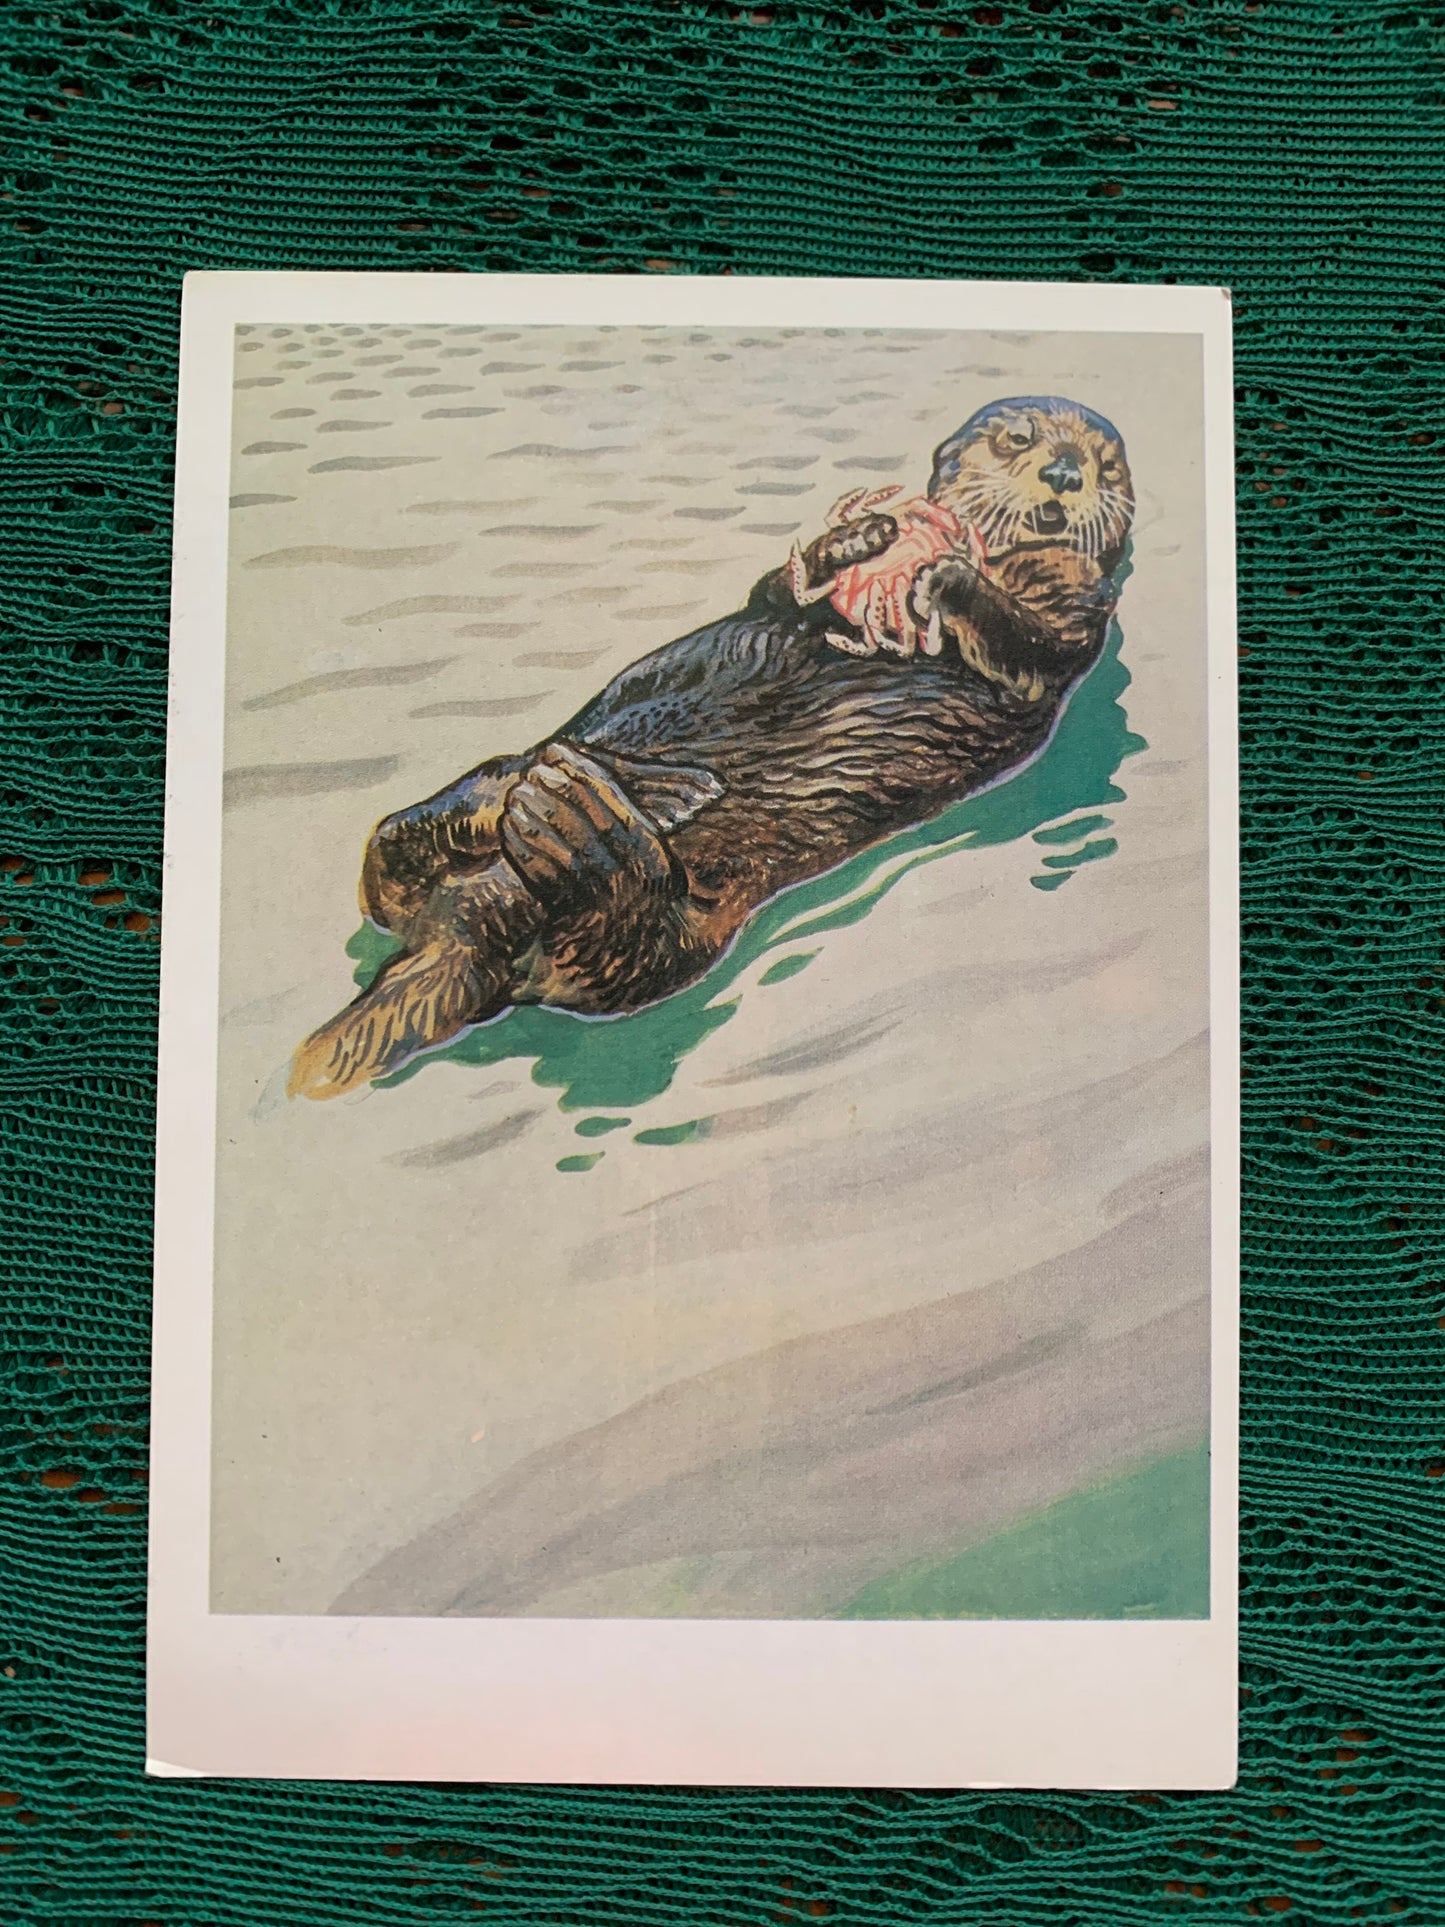 Russian art postcard - Artist V.Gorbatov - Sea otter (Enhydra lutris) - Animal postcard - Printed in USSR - 1990 - unused